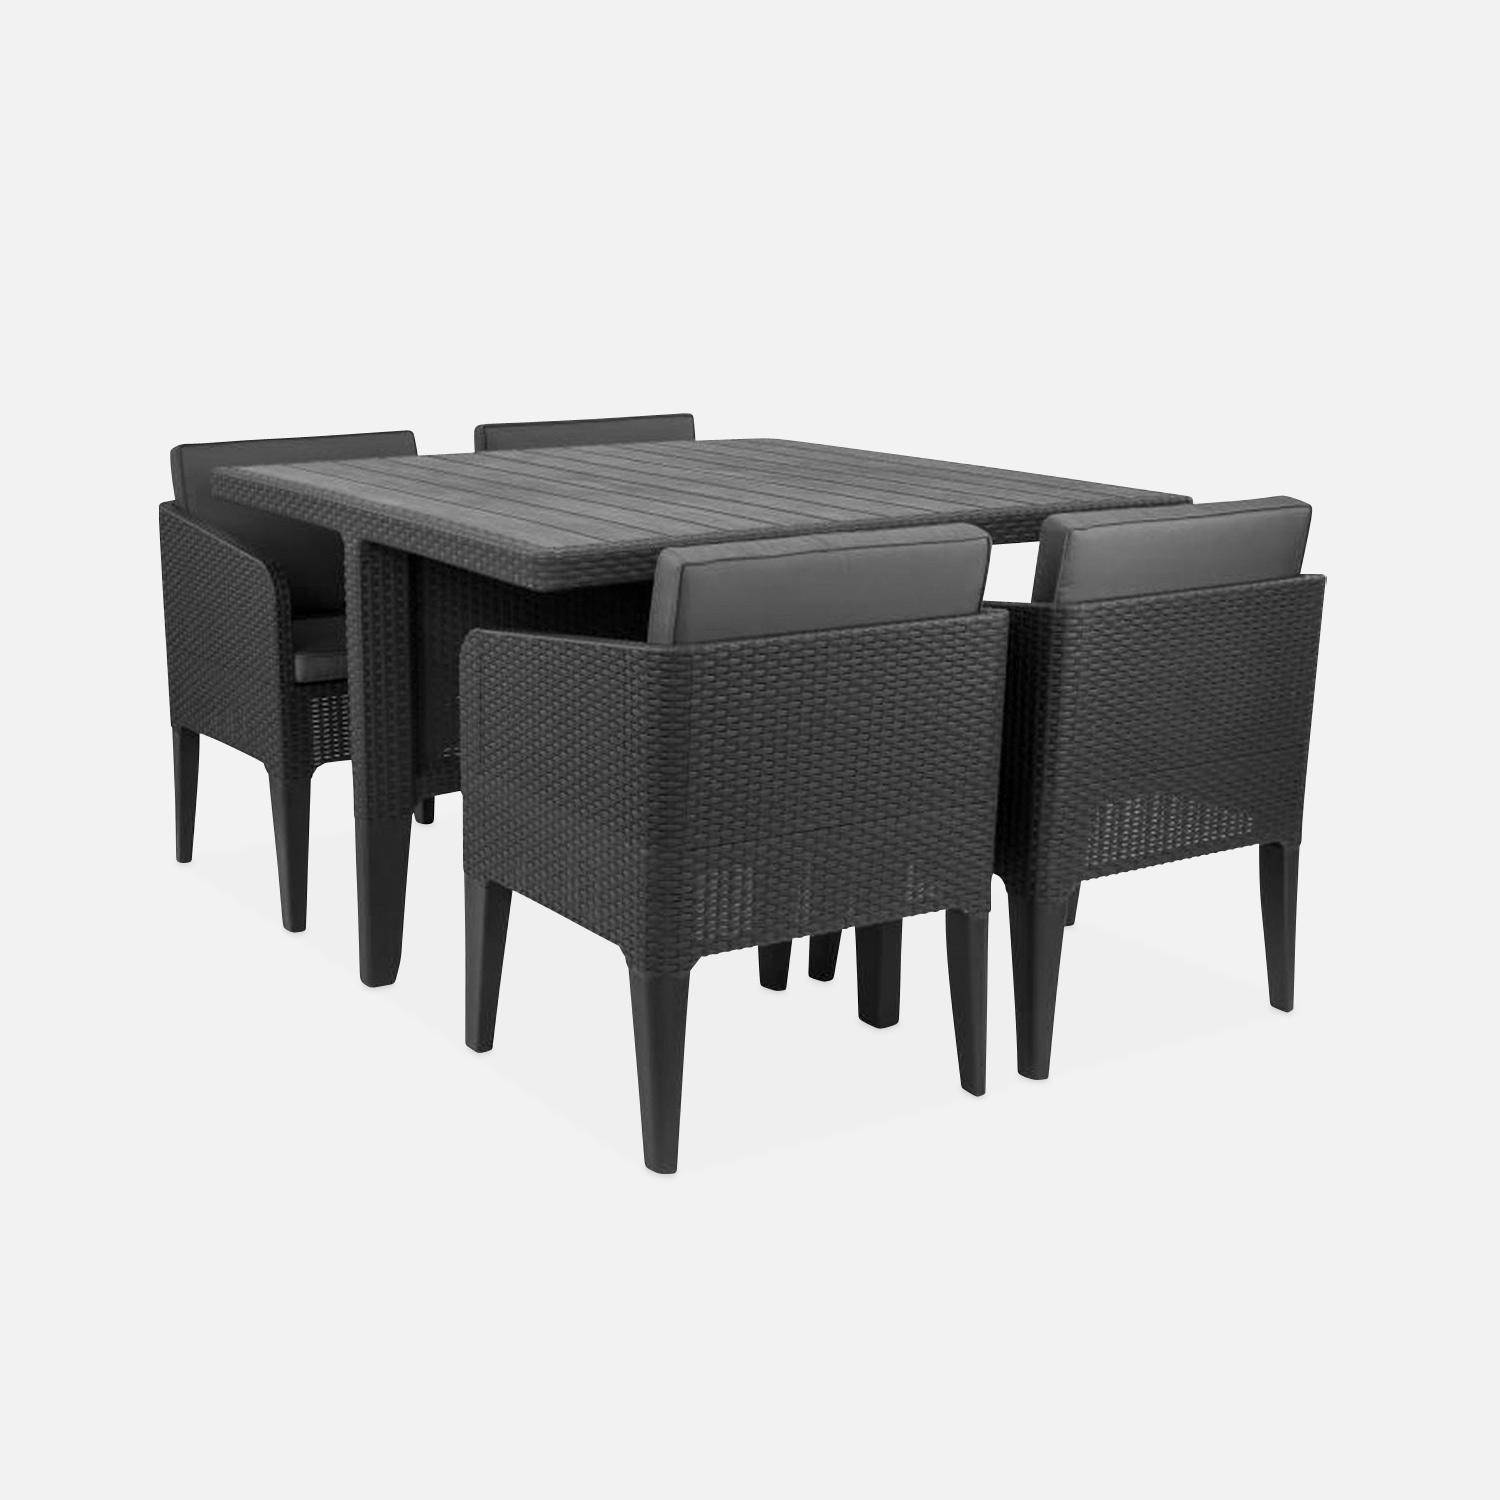 Gartentisch aus gespritztem Kunststoffharz in Rattanoptik - Columbia 4 - Graphit, graue Kissen - 4 Sitze, 4 Sessel, ein Tisch, inkl. Kissen Photo1